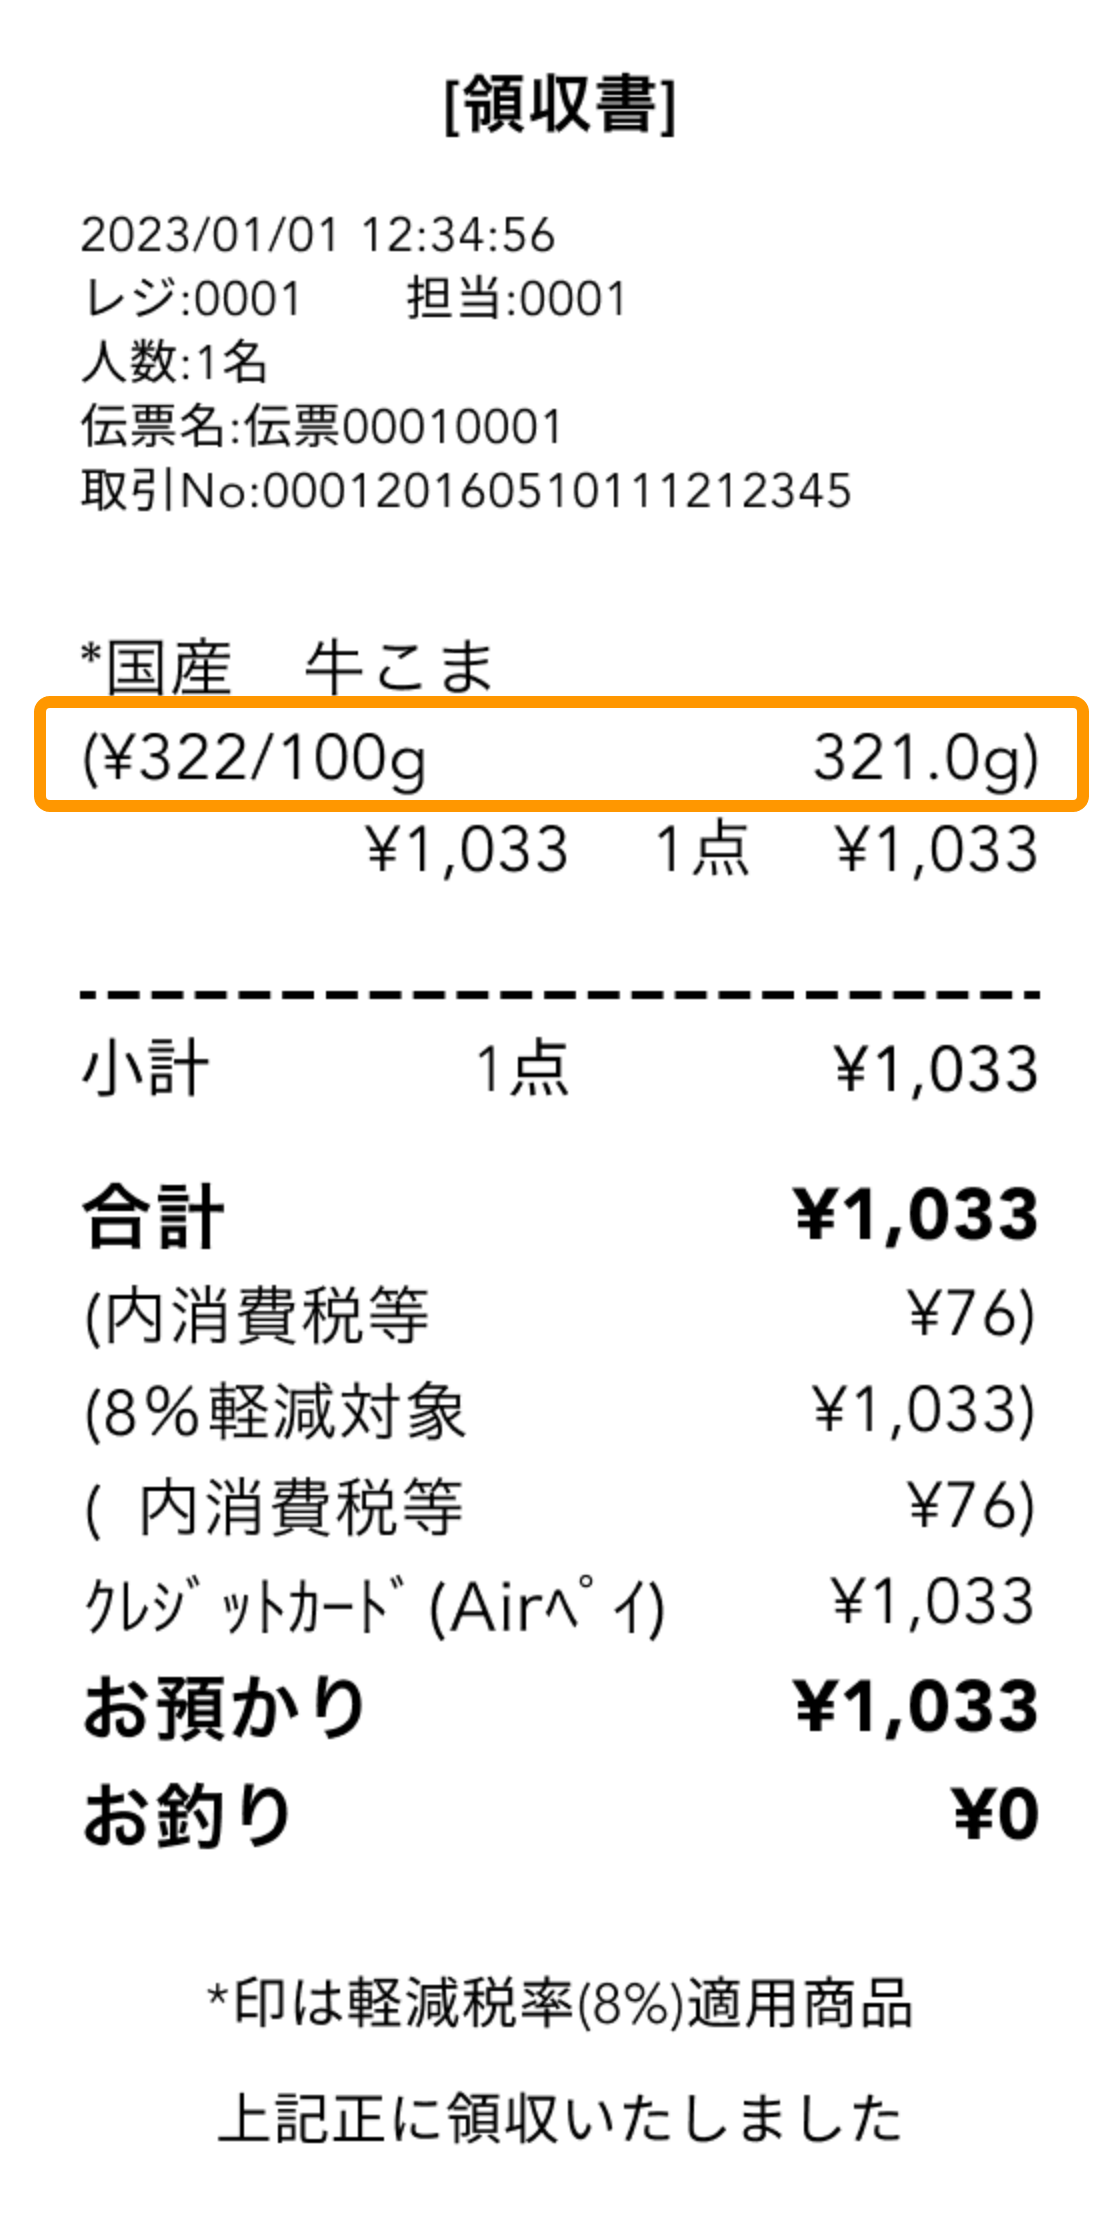 sample_receipt レシート見本